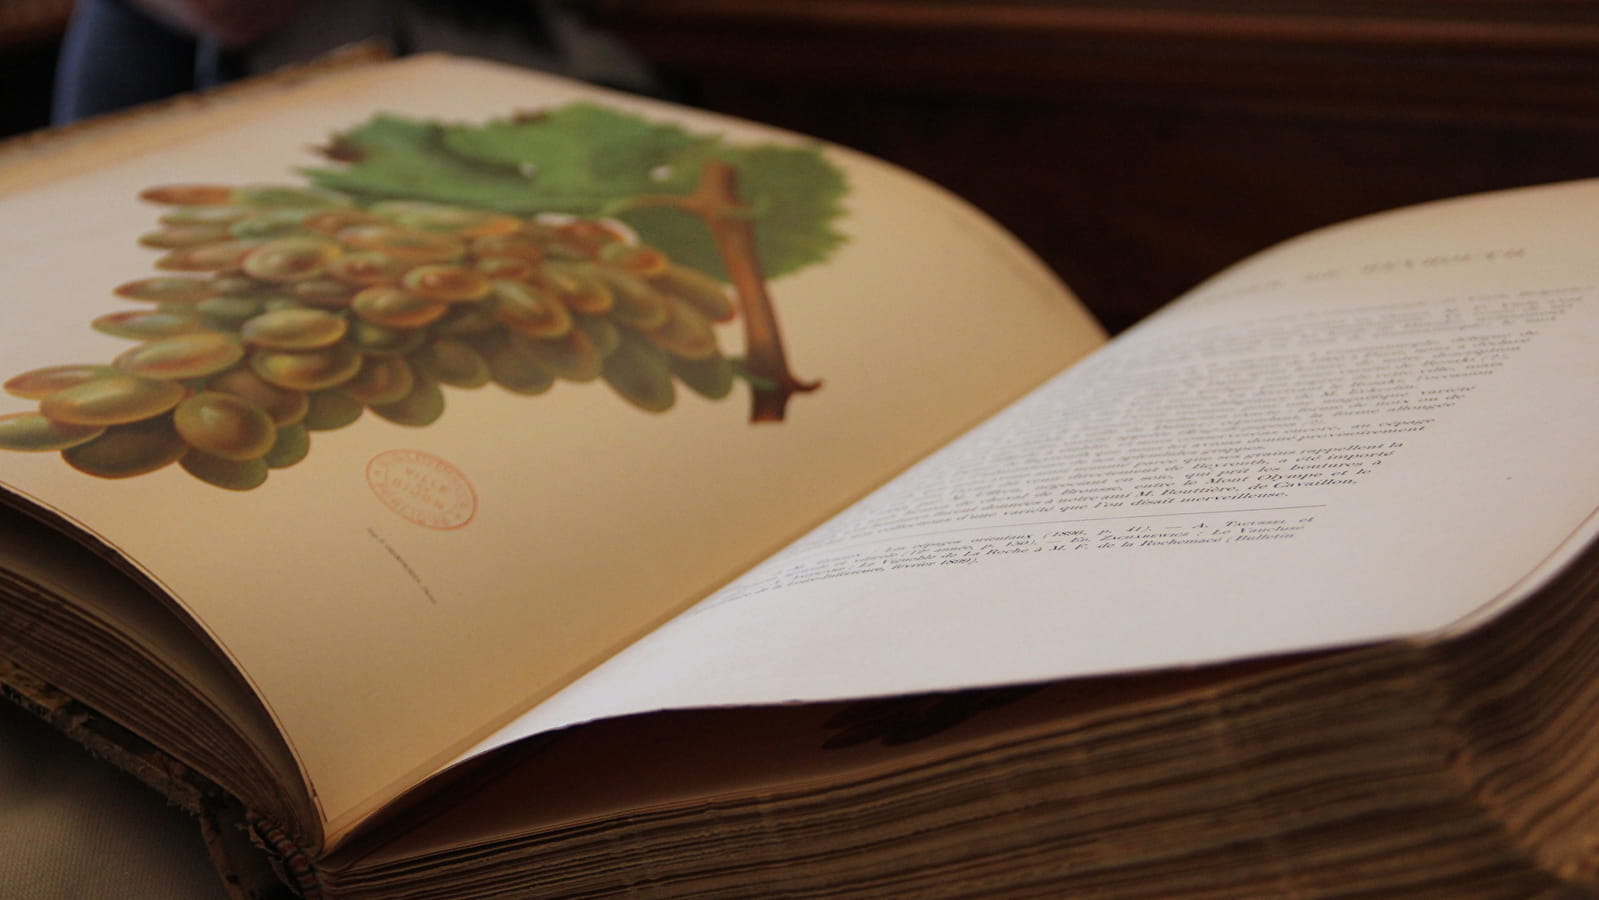 1u met hedendaags erfgoed: de wijnstok en het kunstenaarsboek